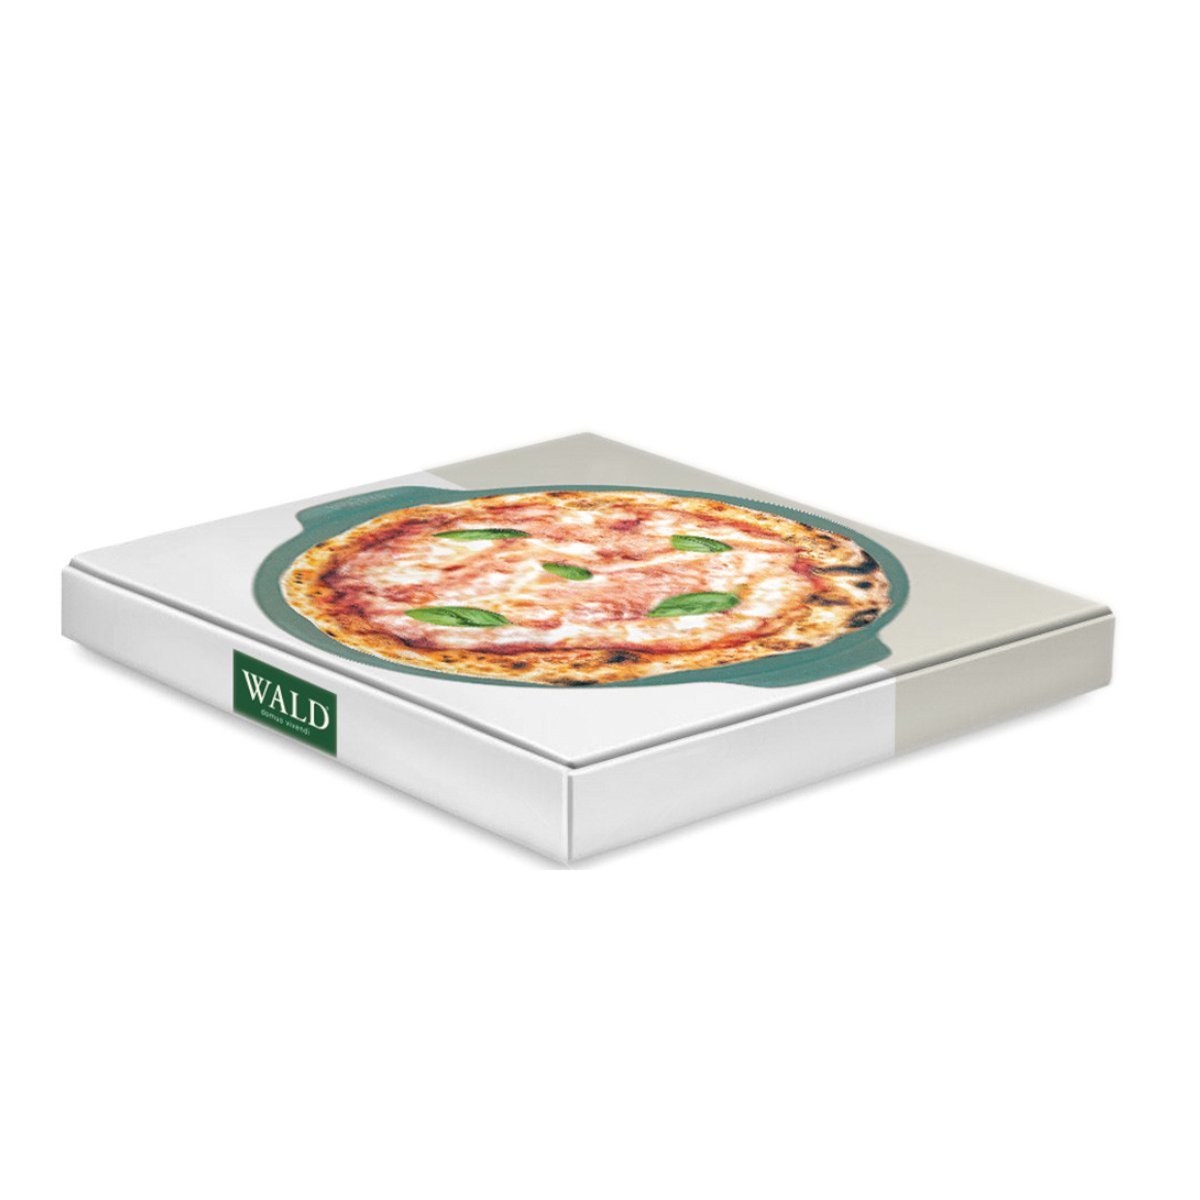 WALD Pizzastein Pizzaplatte 34 cm, glasiert Ton, dunkelgrau, durchgebrannt anthrazit und